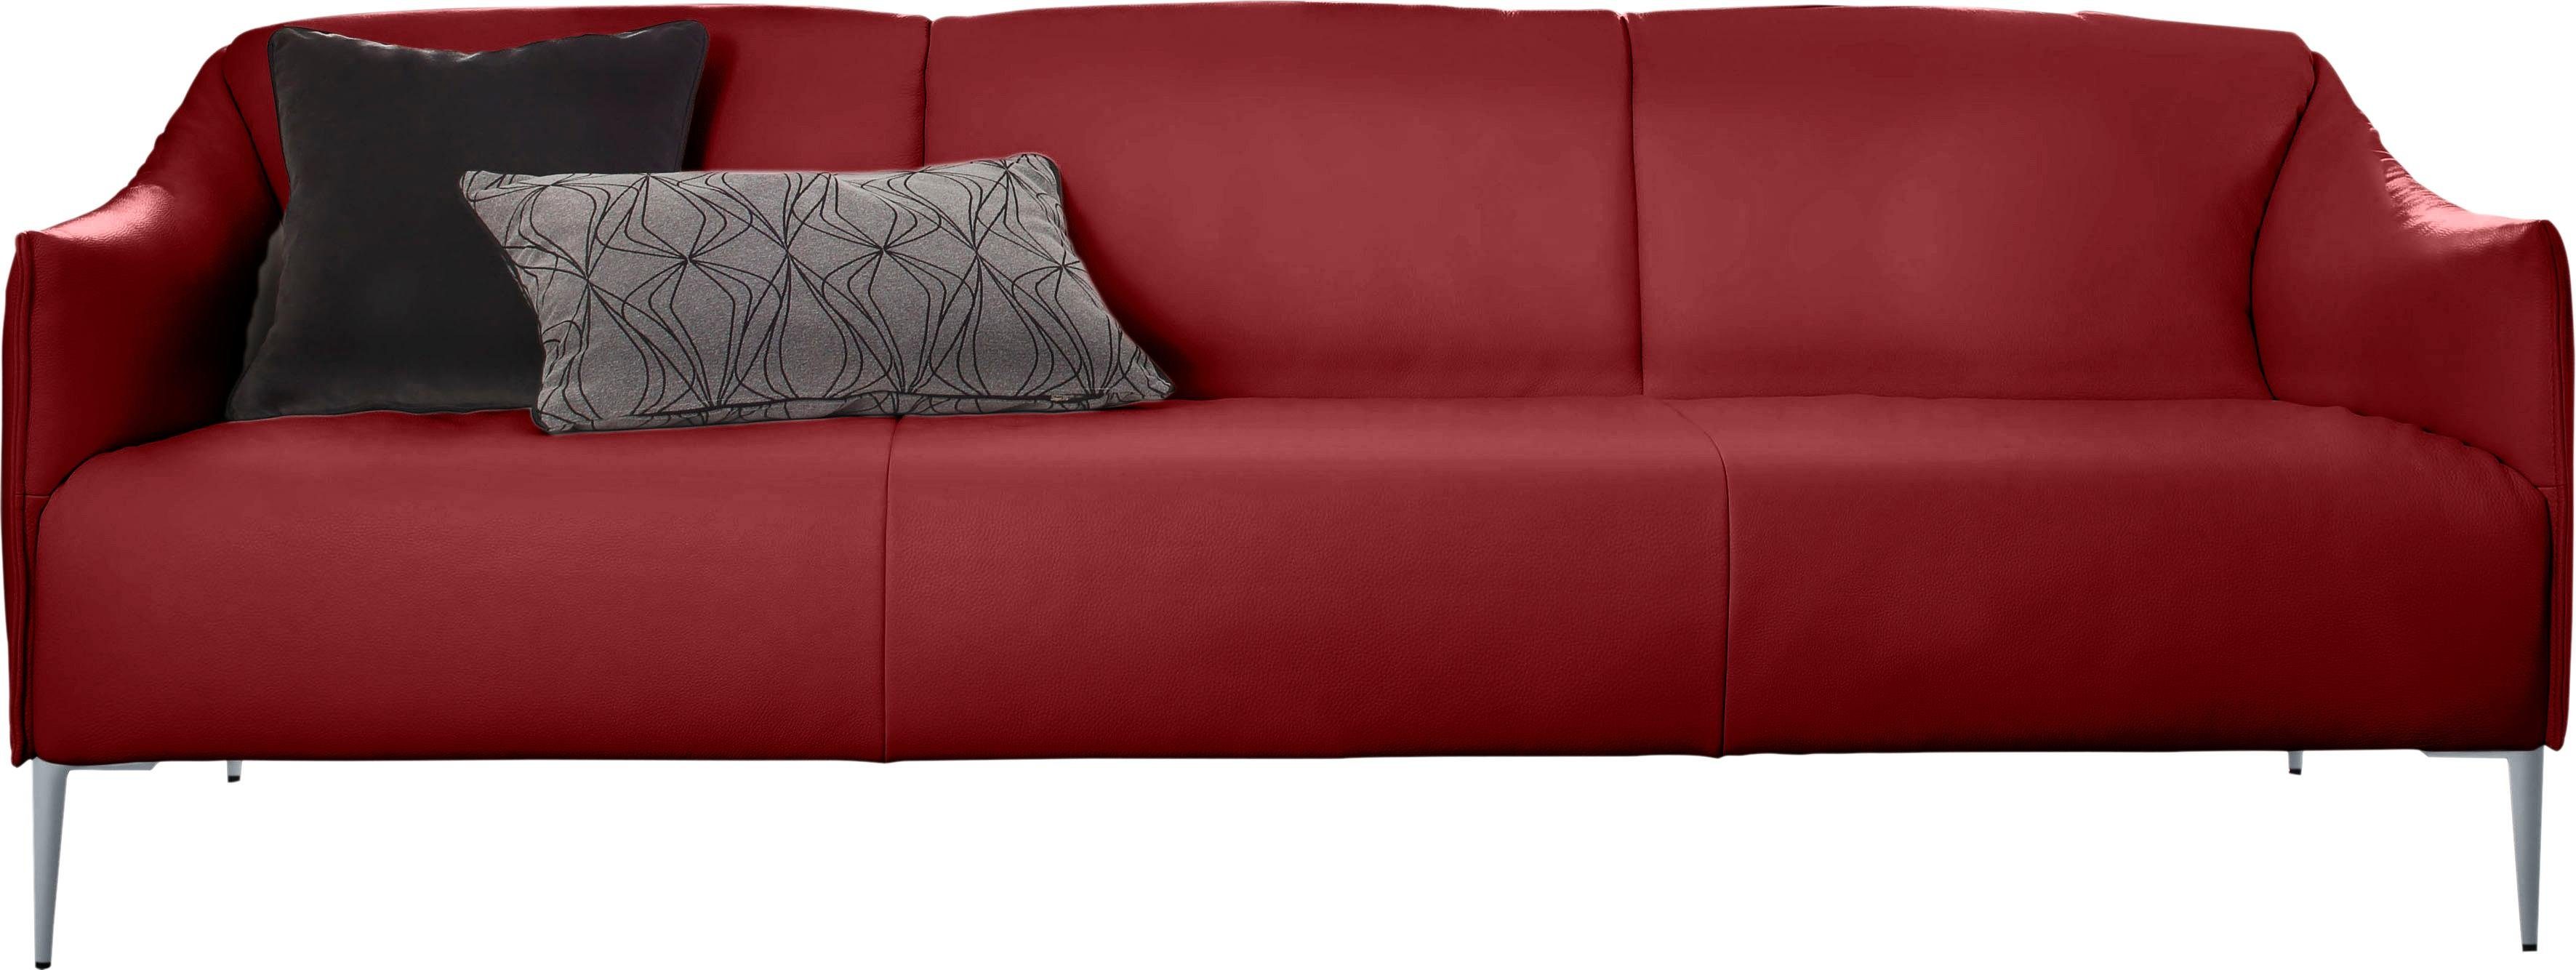 Silber Metallfüßen W.SCHILLIG Breite 3-Sitzer cm 224 Z59 matt, mit in sally, ruby red